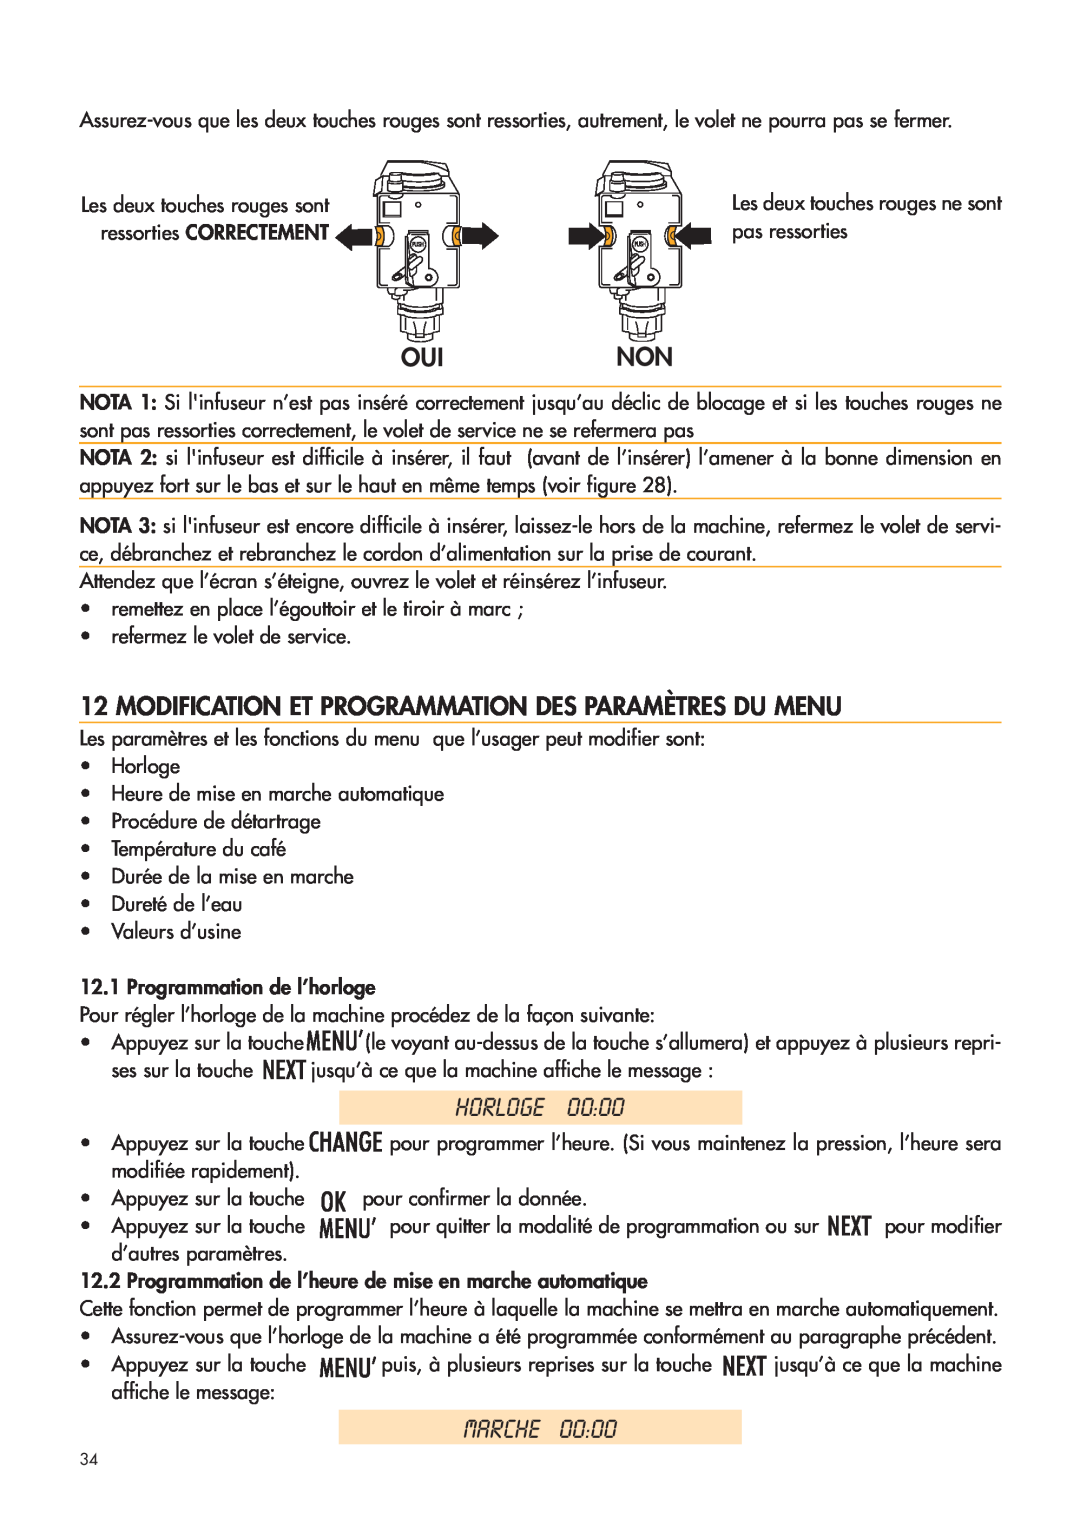 DeLonghi ESAM4400 manual Horloge, Marche, Ouinon, Modification Et Programmation Des Paramètres Du Menu 